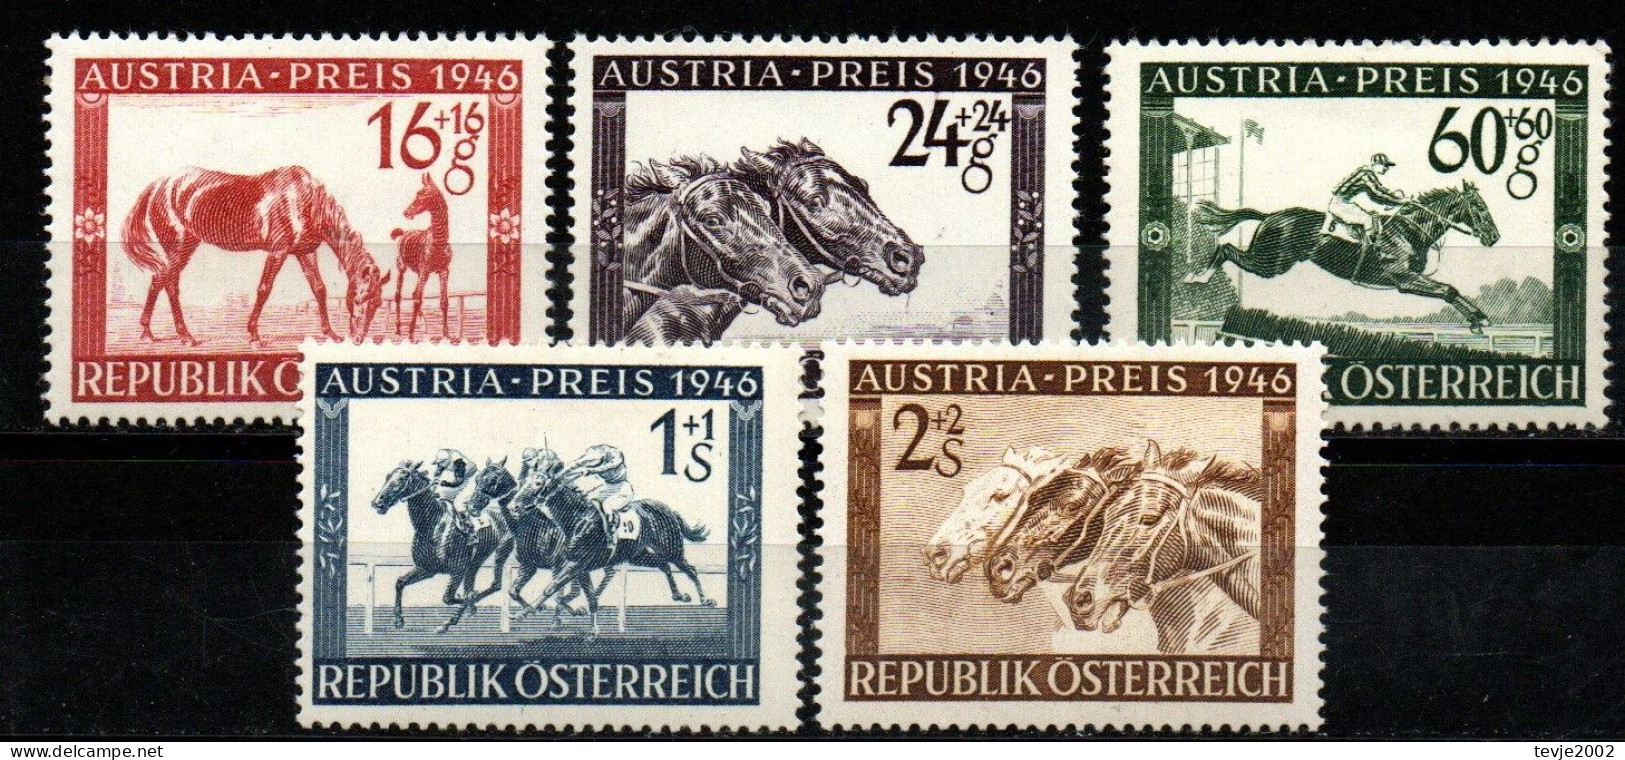 Österreich 1946 - Mi.Nr. 785 - 789 - Postfrisch MNH - Tiere Animals Pferde Horses Sport Reiten Riding - Horses